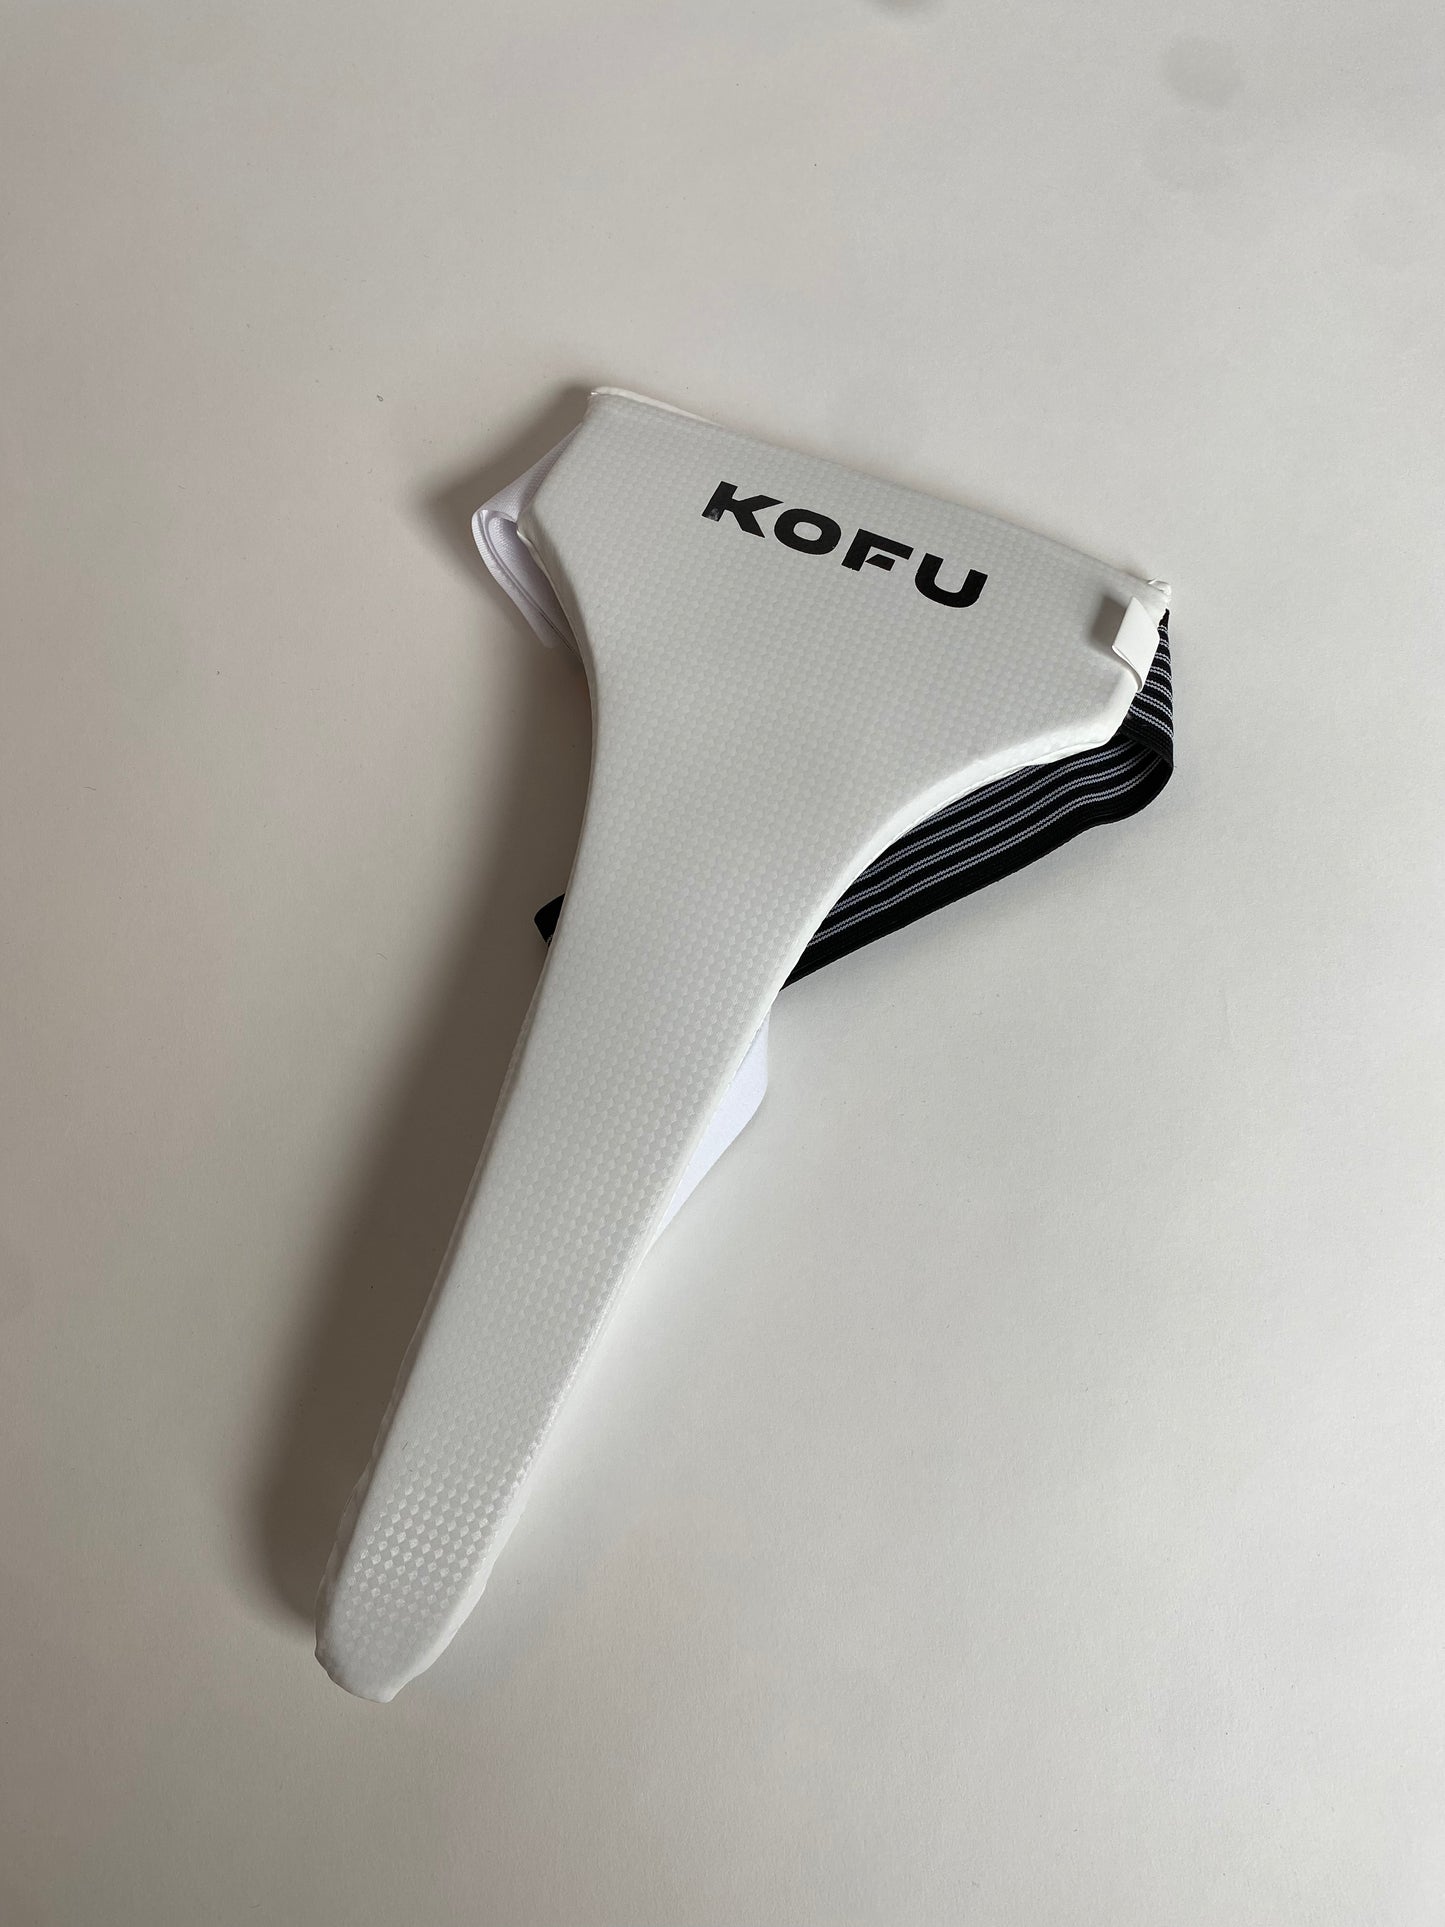 KOFU - Dameskruisbeschermer / Tok / Toque